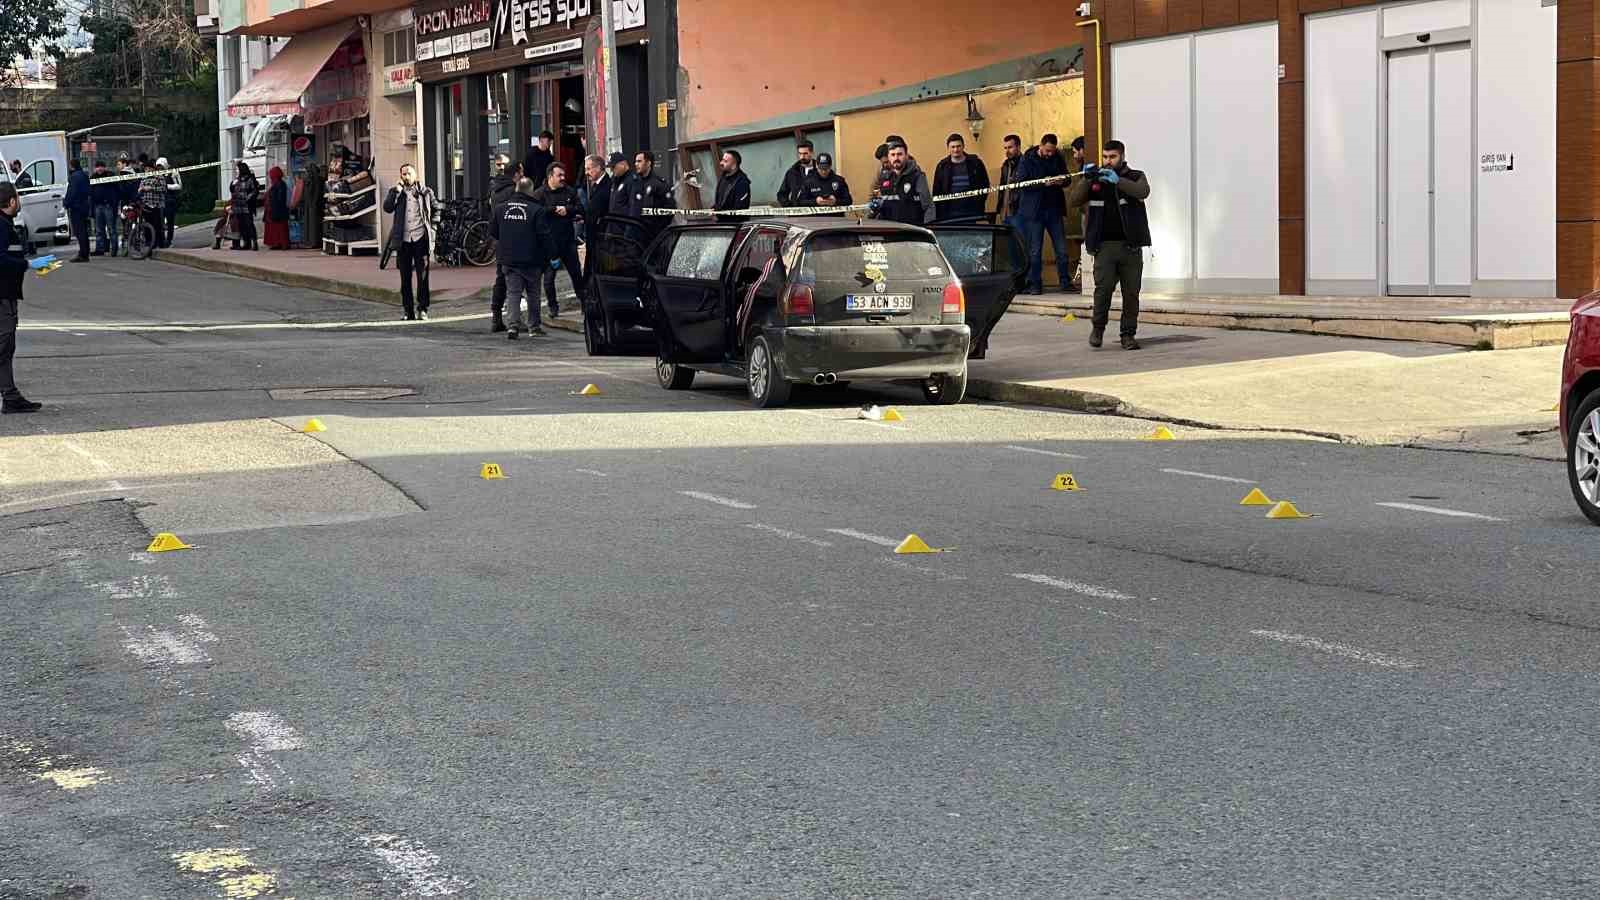 Rize’de sokak ortasındaki silahlı ve bıçaklı kavgada yeni gelişme: 7 gözaltı
